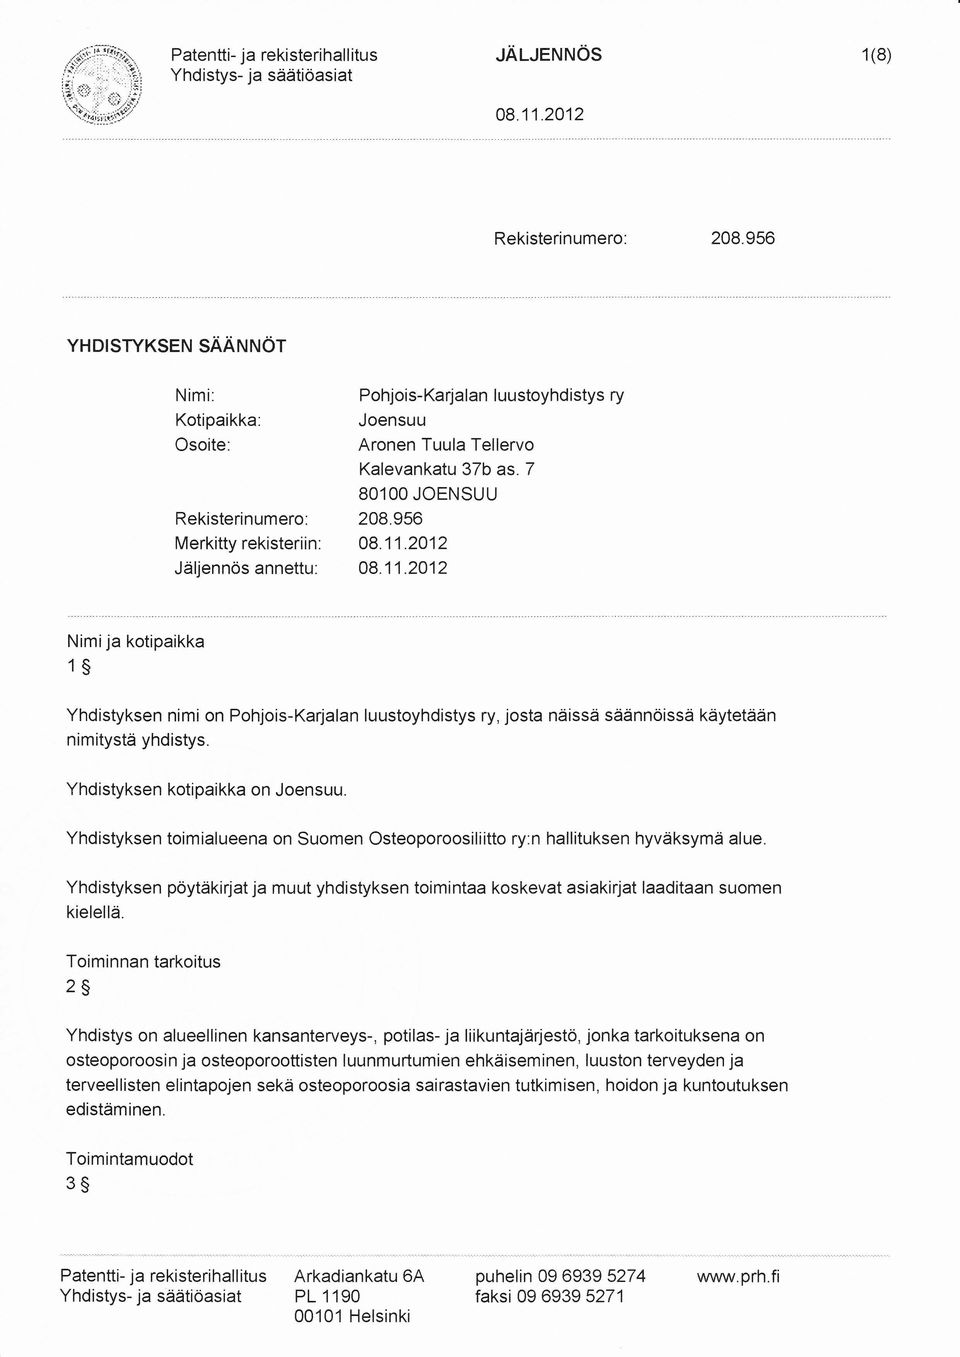 2012 Jäljennös annettu: 08.11.2012 Nimija kotipaikka 1S Yhdistyksen nimi on Pohjois-Karjalan luustoyhdistys ry, josta näissä säännöissä käytetään nimitystä yhdistys. Yhdistyksen kotipaikka on Joensuu.